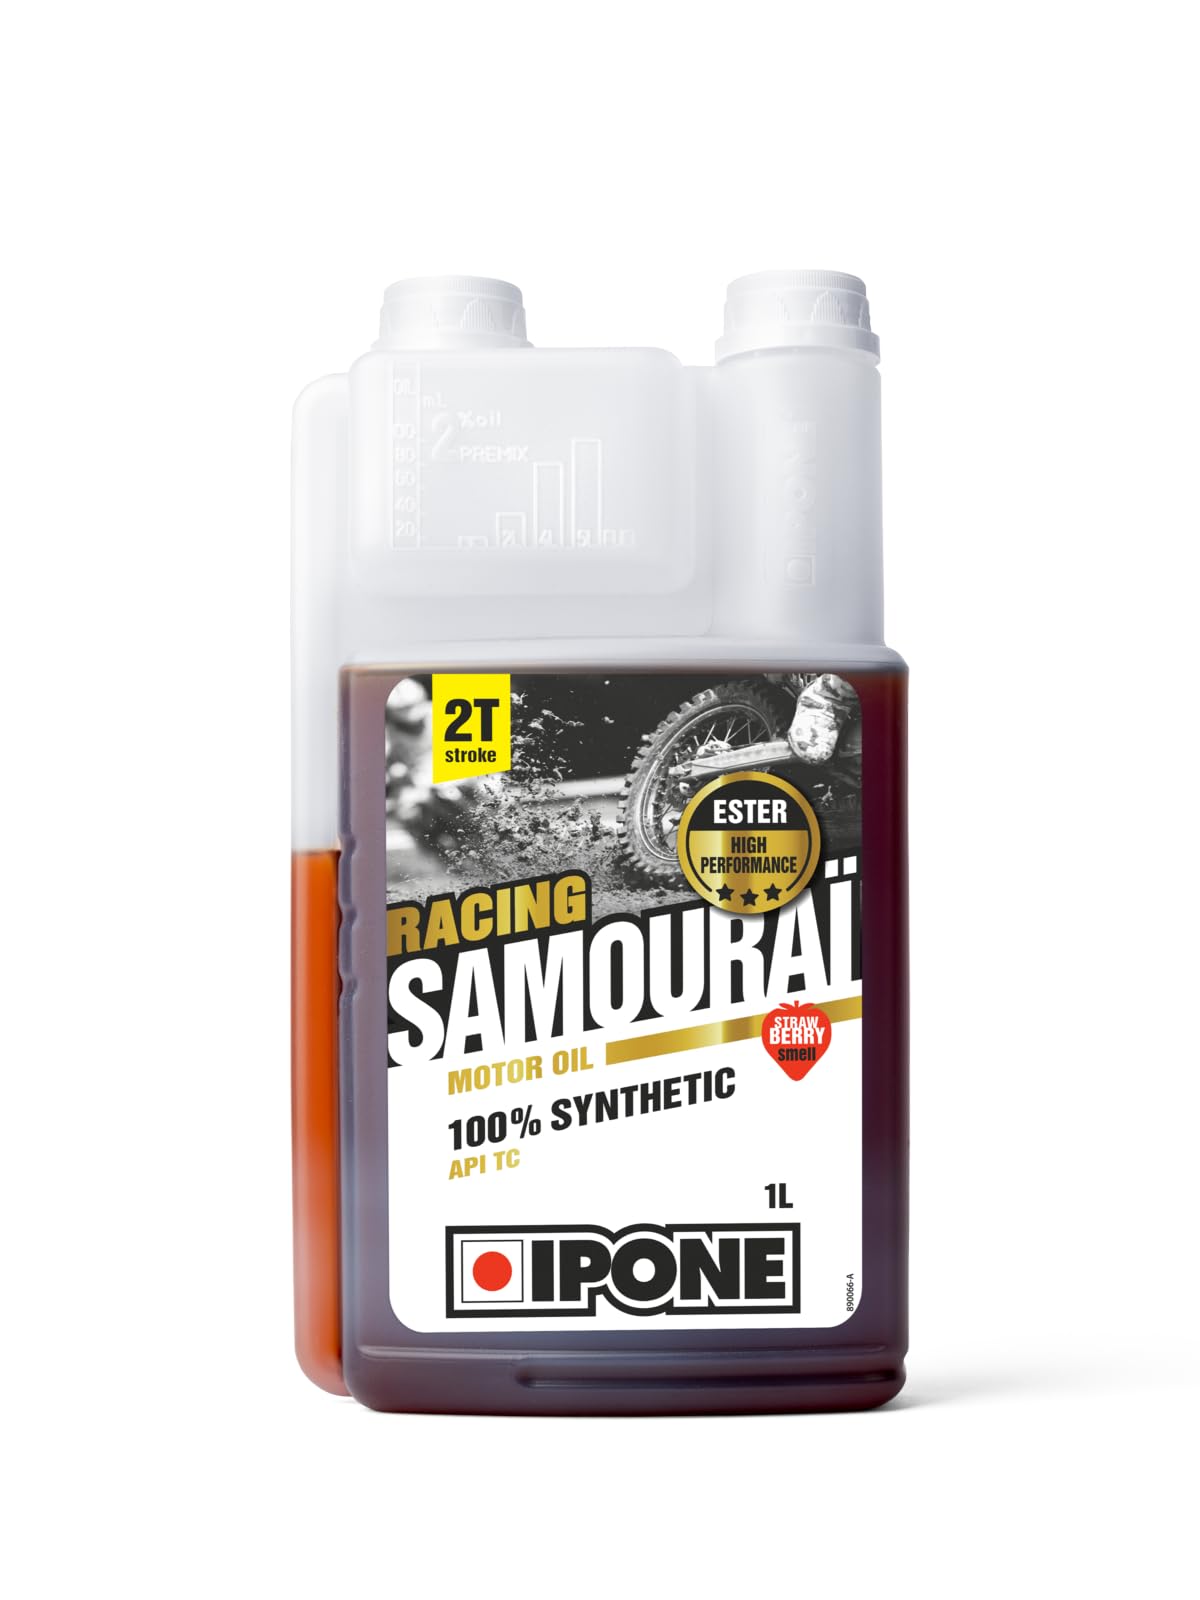 IPONE – Samourai Racing Erdbeere Motoröl ZT Motorrad – Vollsynthetisch mit Ester – Hochleistungs-Schmierstoff – 1 Liter Dosierkanister von Ipone